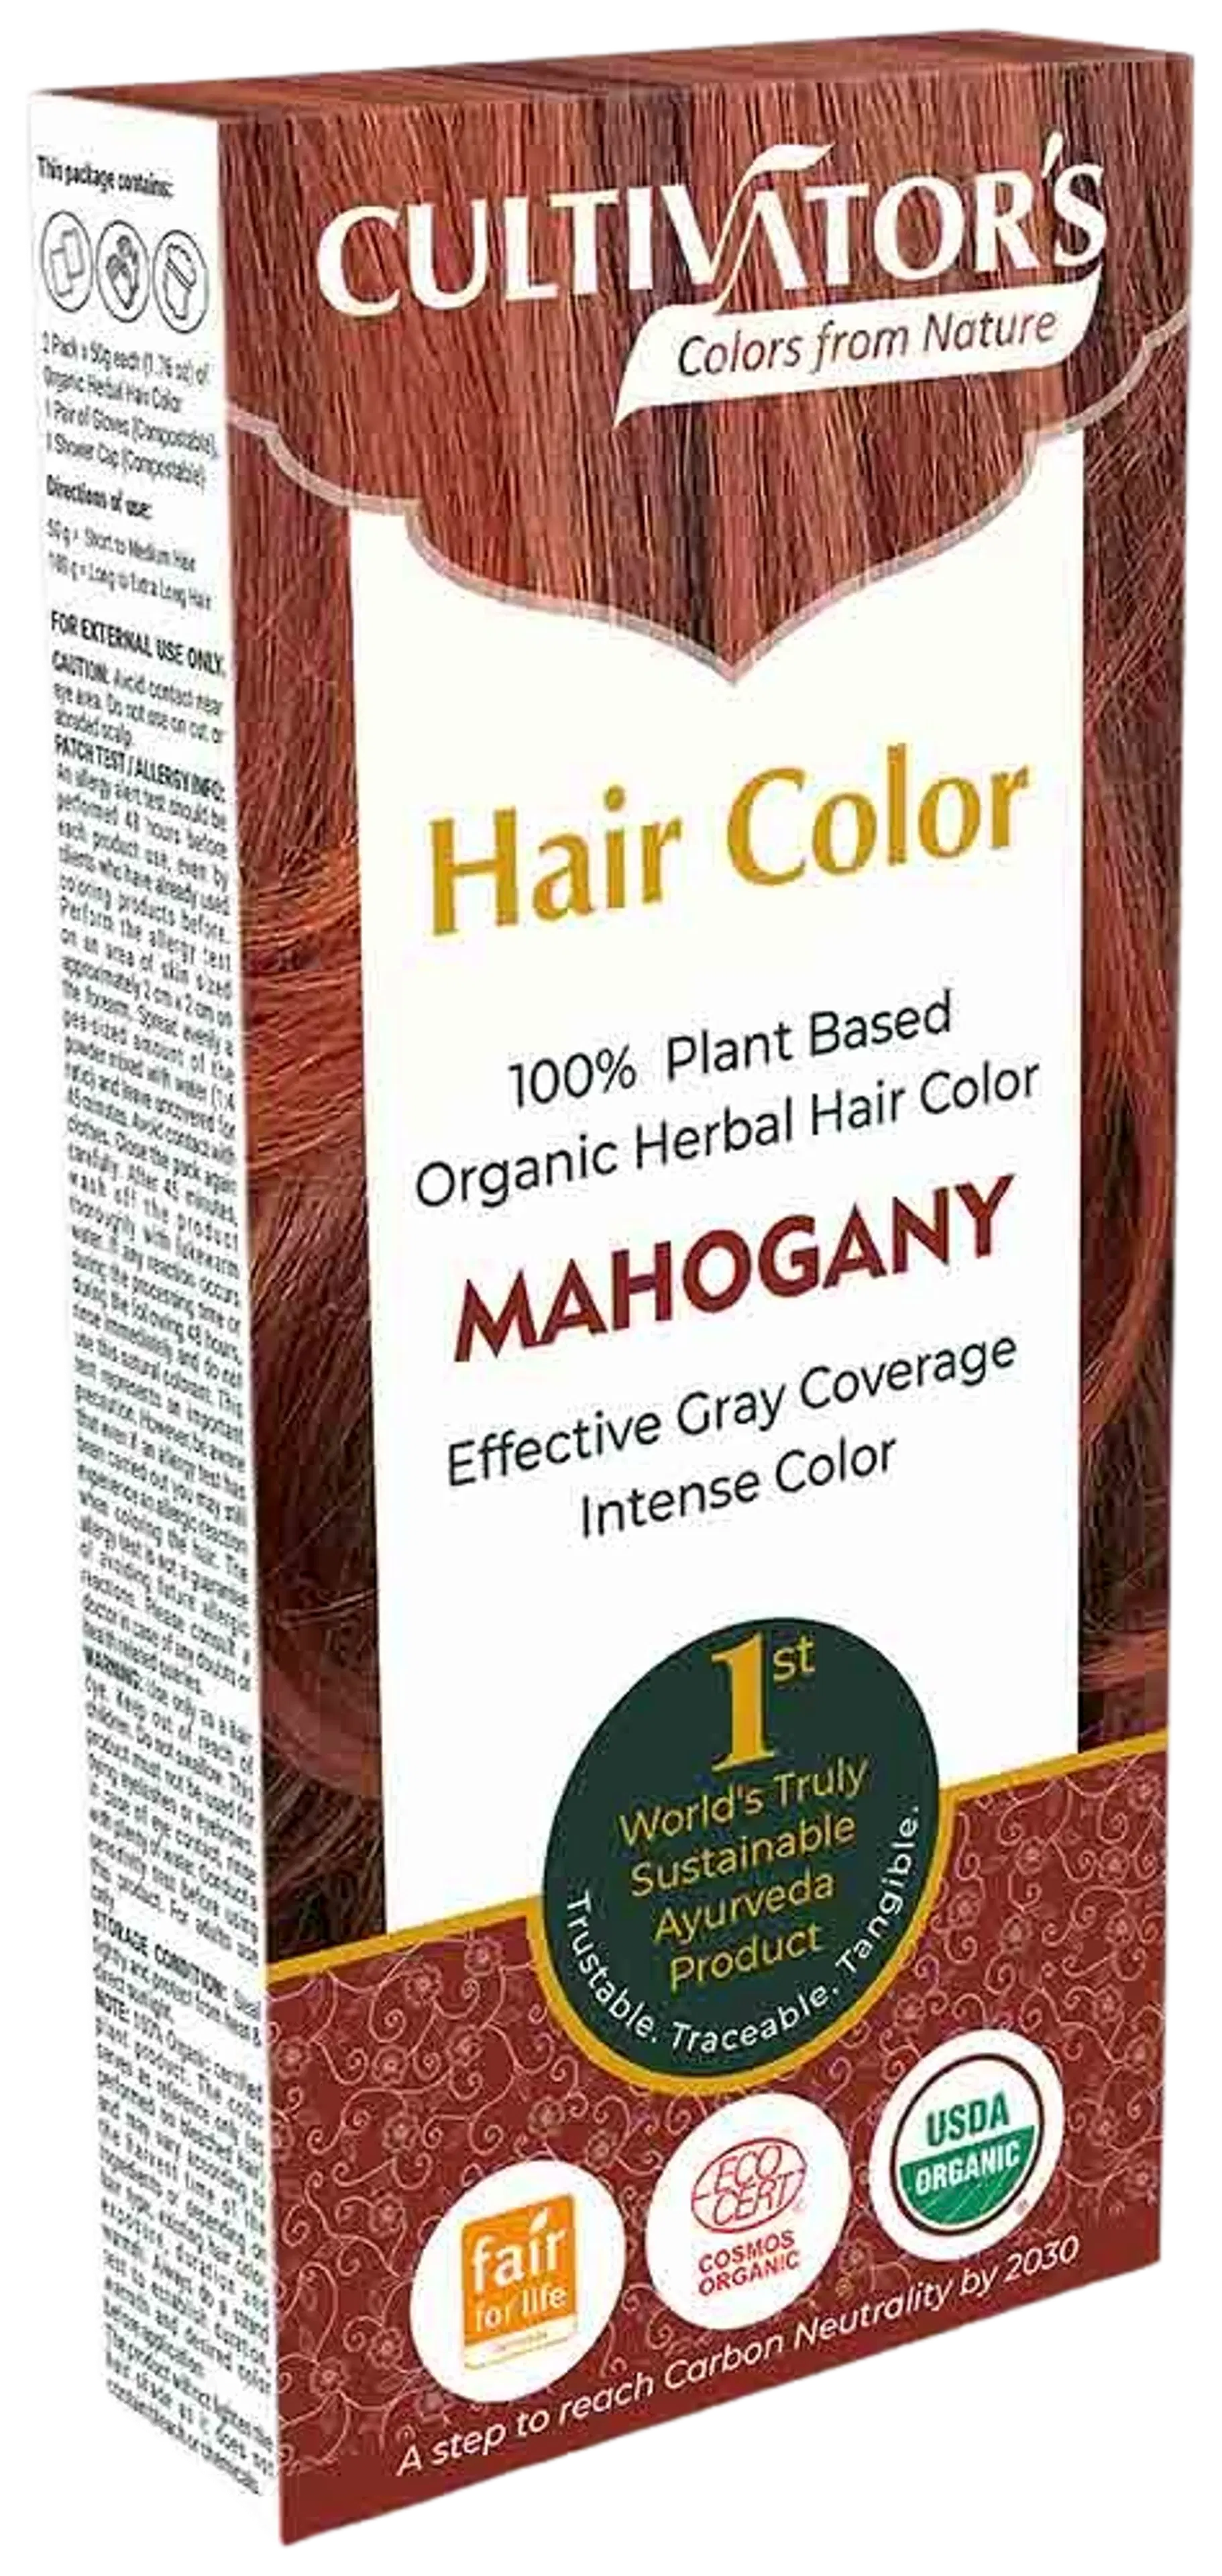 Cultivator's Hair Color Kasviväri Mahogany 100g